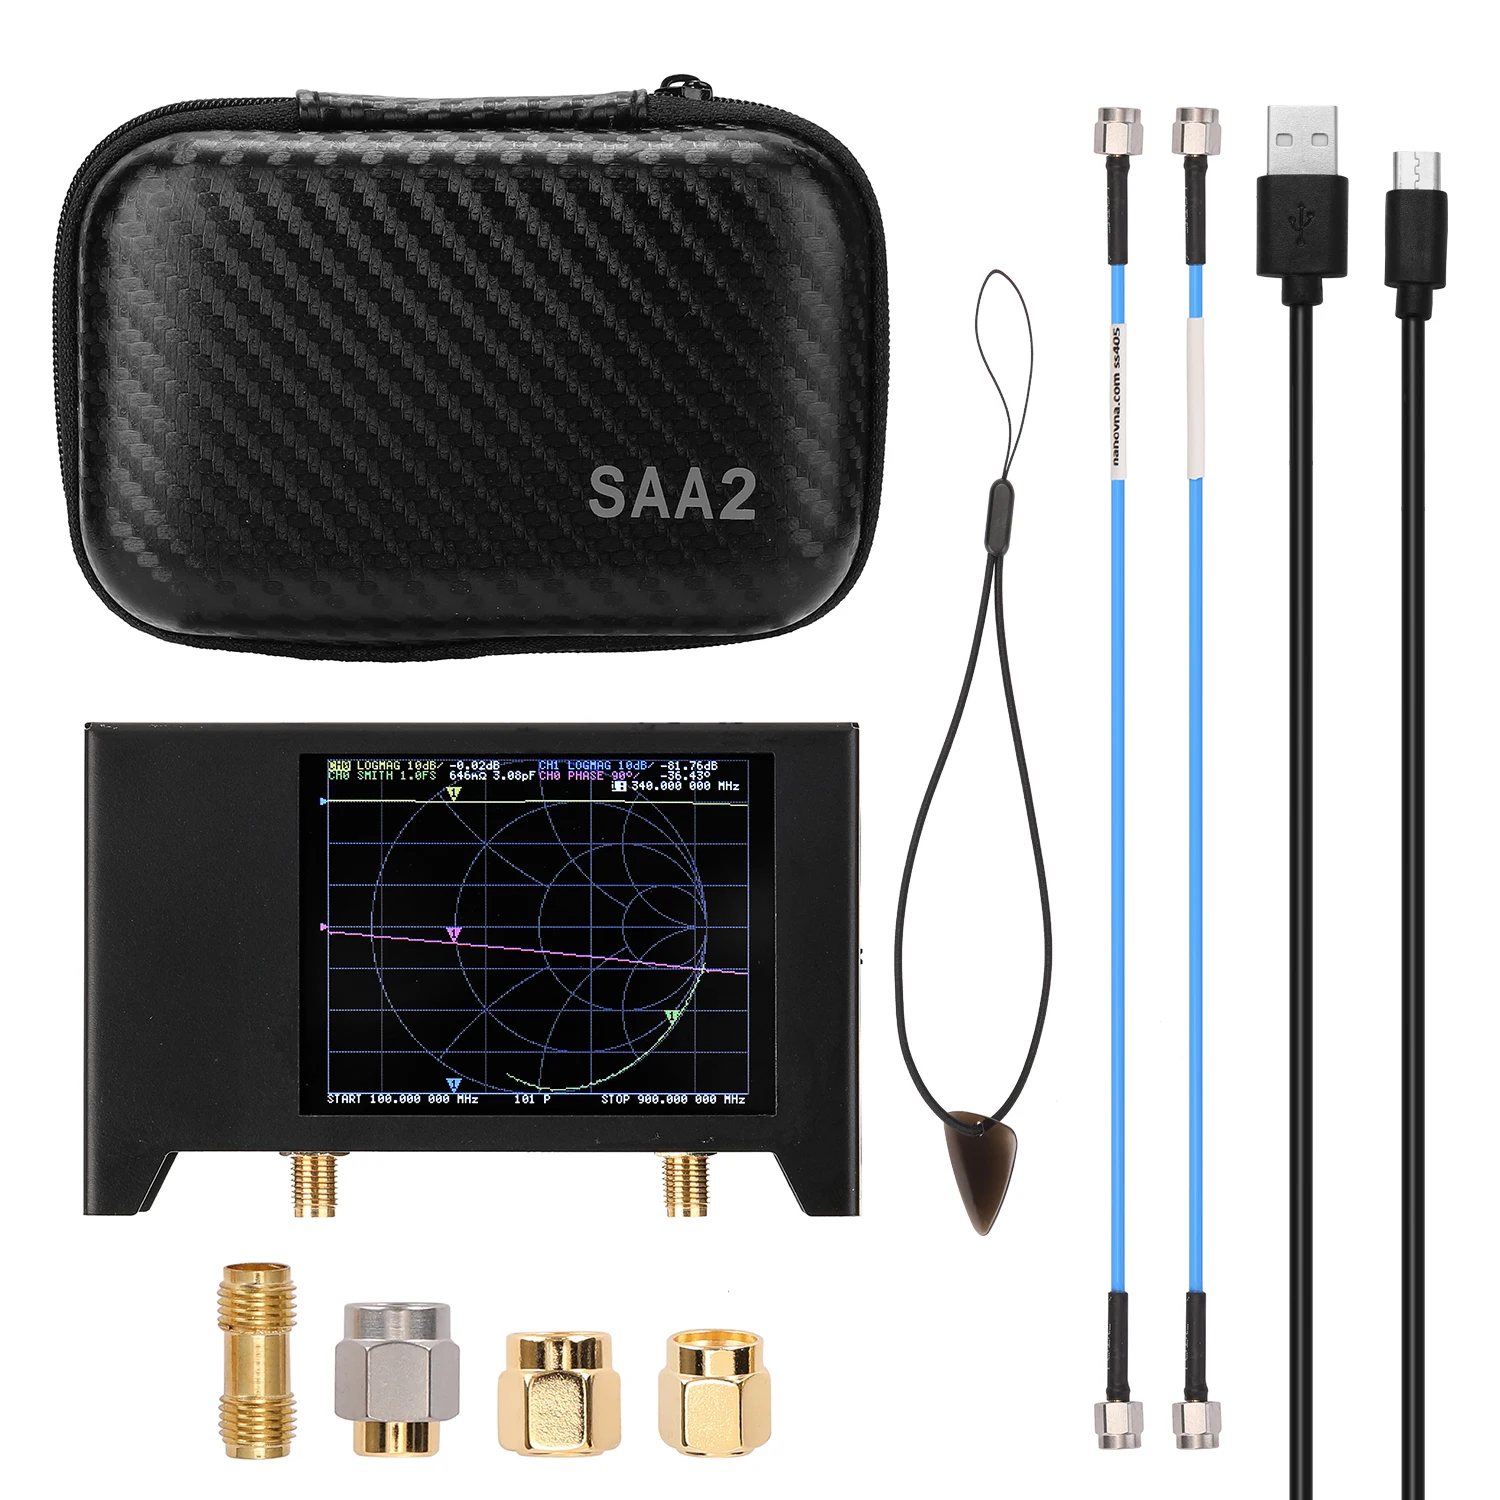 2 8 дюймов Экран 3G вектор сетевой анализатор S-A-A-2 NanoVNA V2 антенны коротковолновое HF